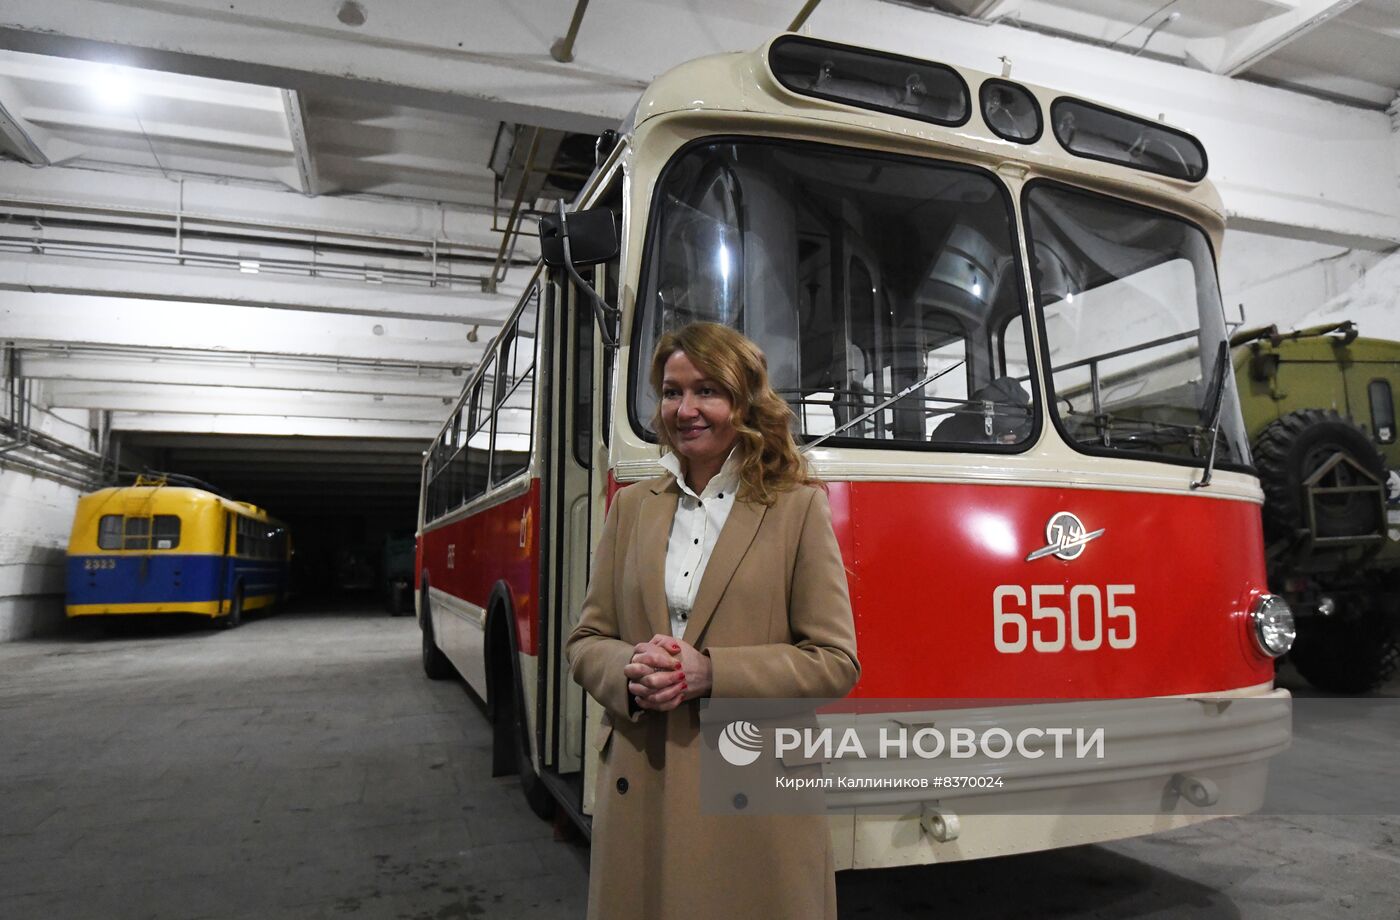 Фонды хранения коллекции музея транспорта Москвы